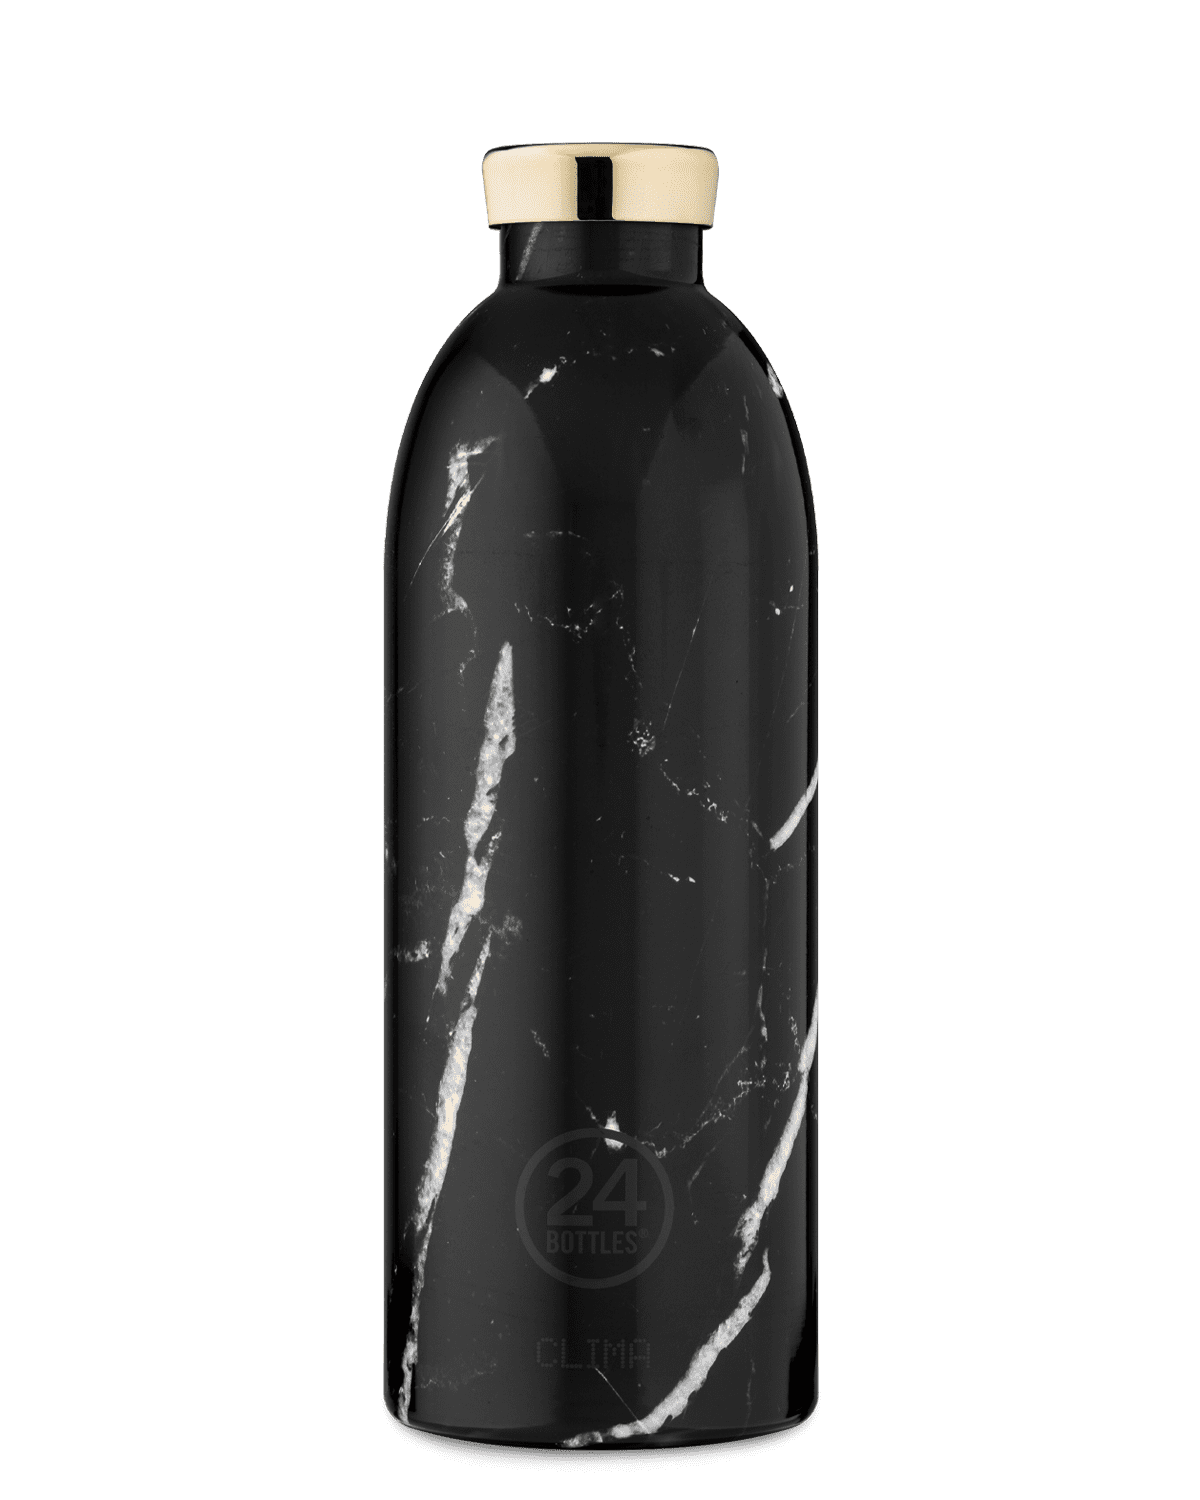 24Bottles 850ml Black Marble Clima Bottle